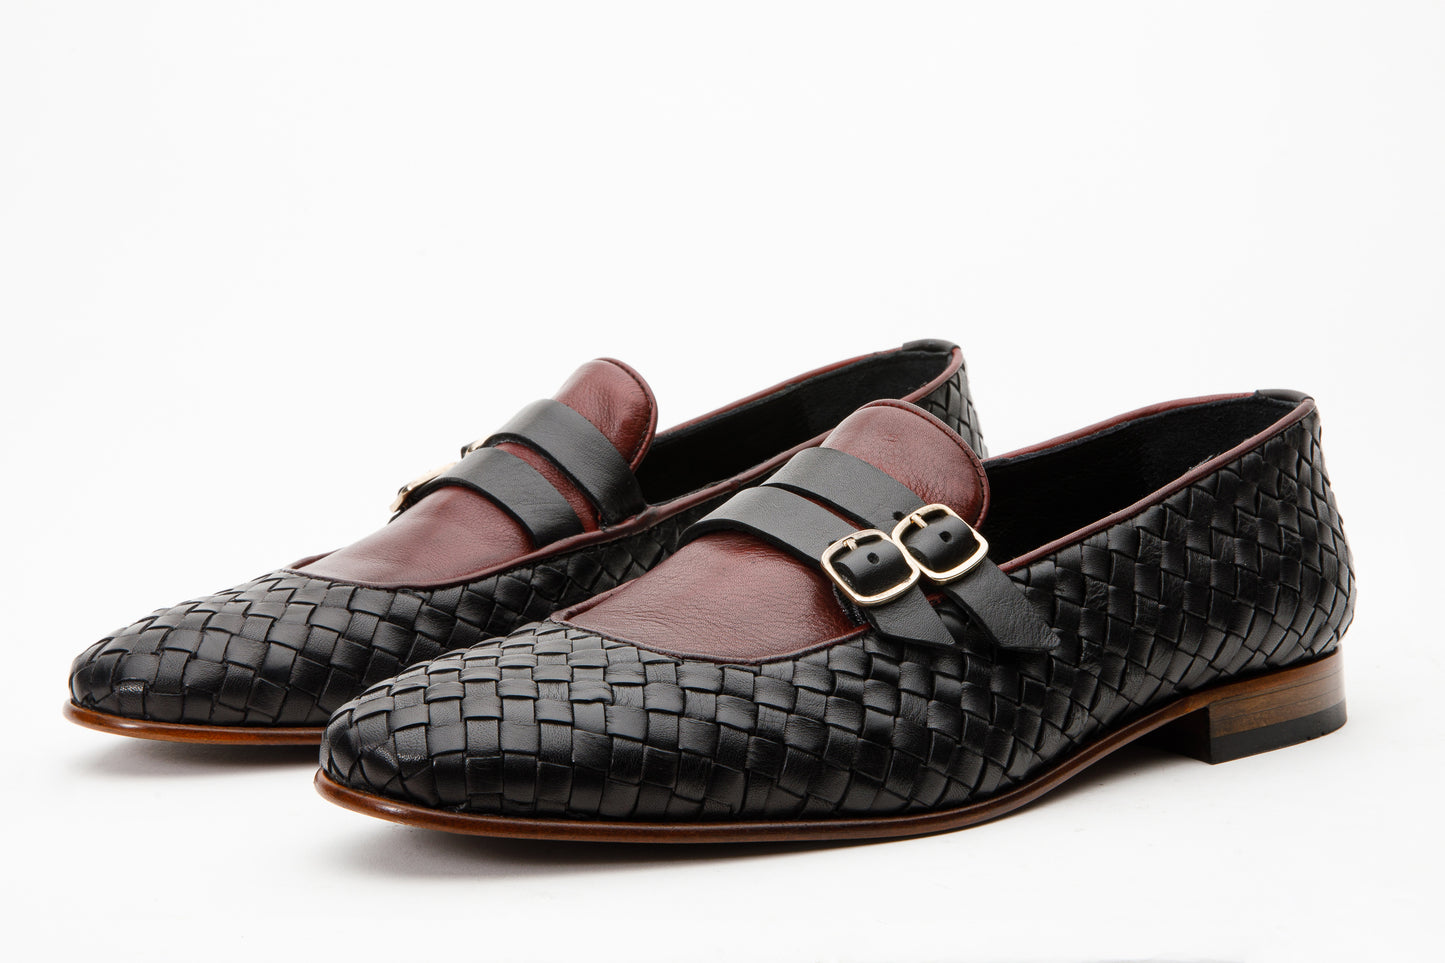 The Vatra Black & Burgundy Woven Double Monk Strap Men Shoe